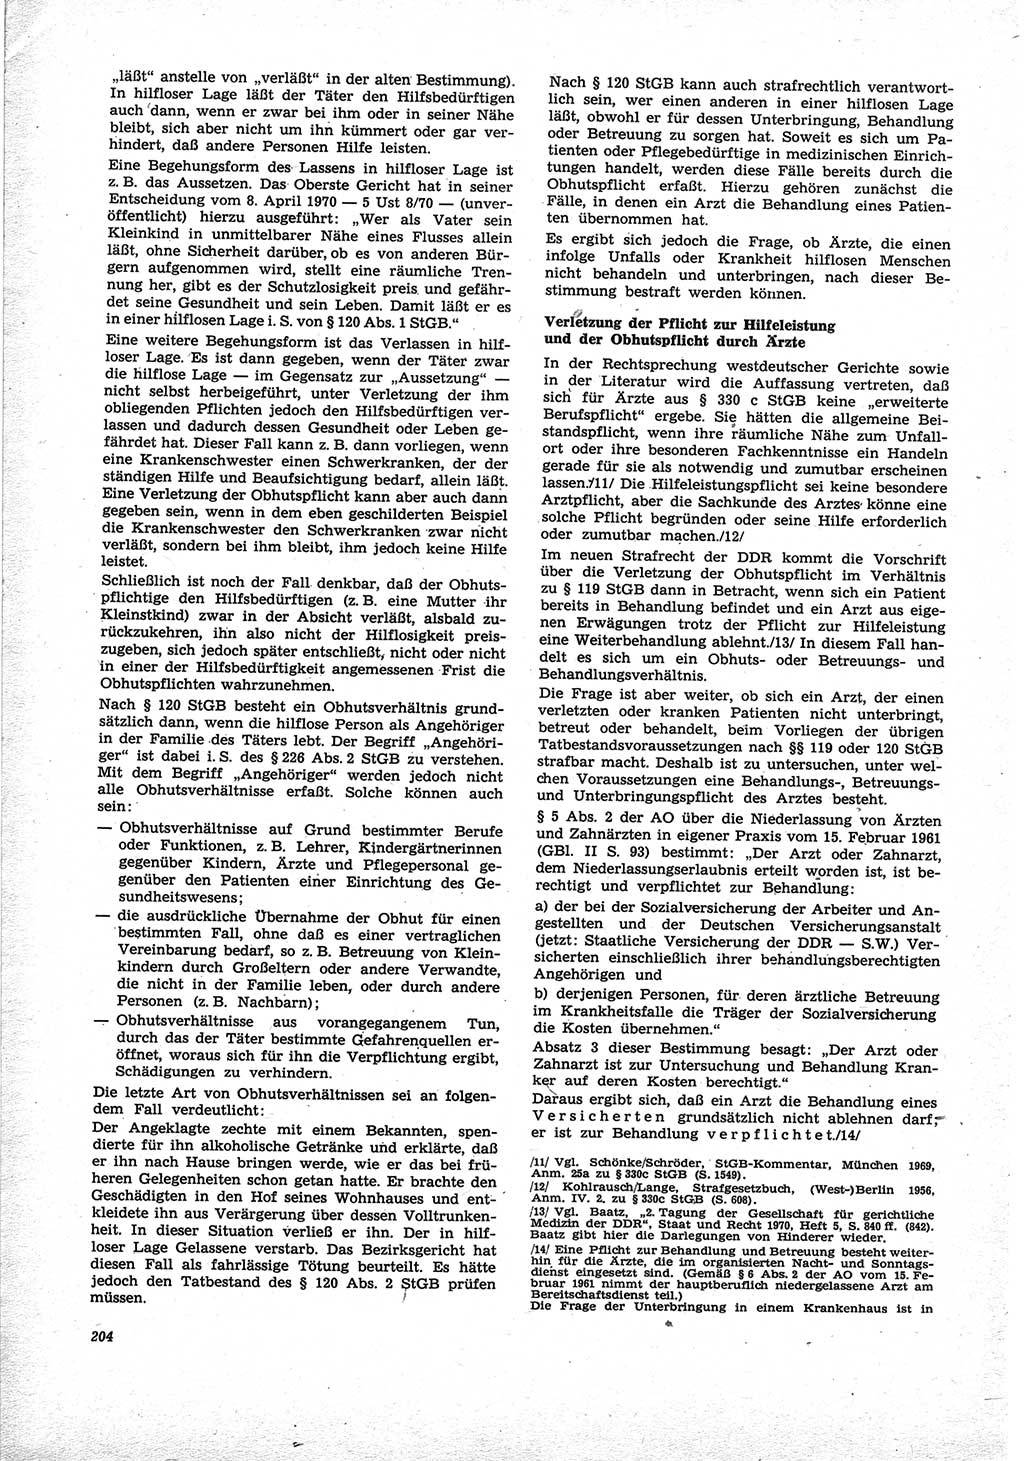 Neue Justiz (NJ), Zeitschrift für Recht und Rechtswissenschaft [Deutsche Demokratische Republik (DDR)], 25. Jahrgang 1971, Seite 204 (NJ DDR 1971, S. 204)